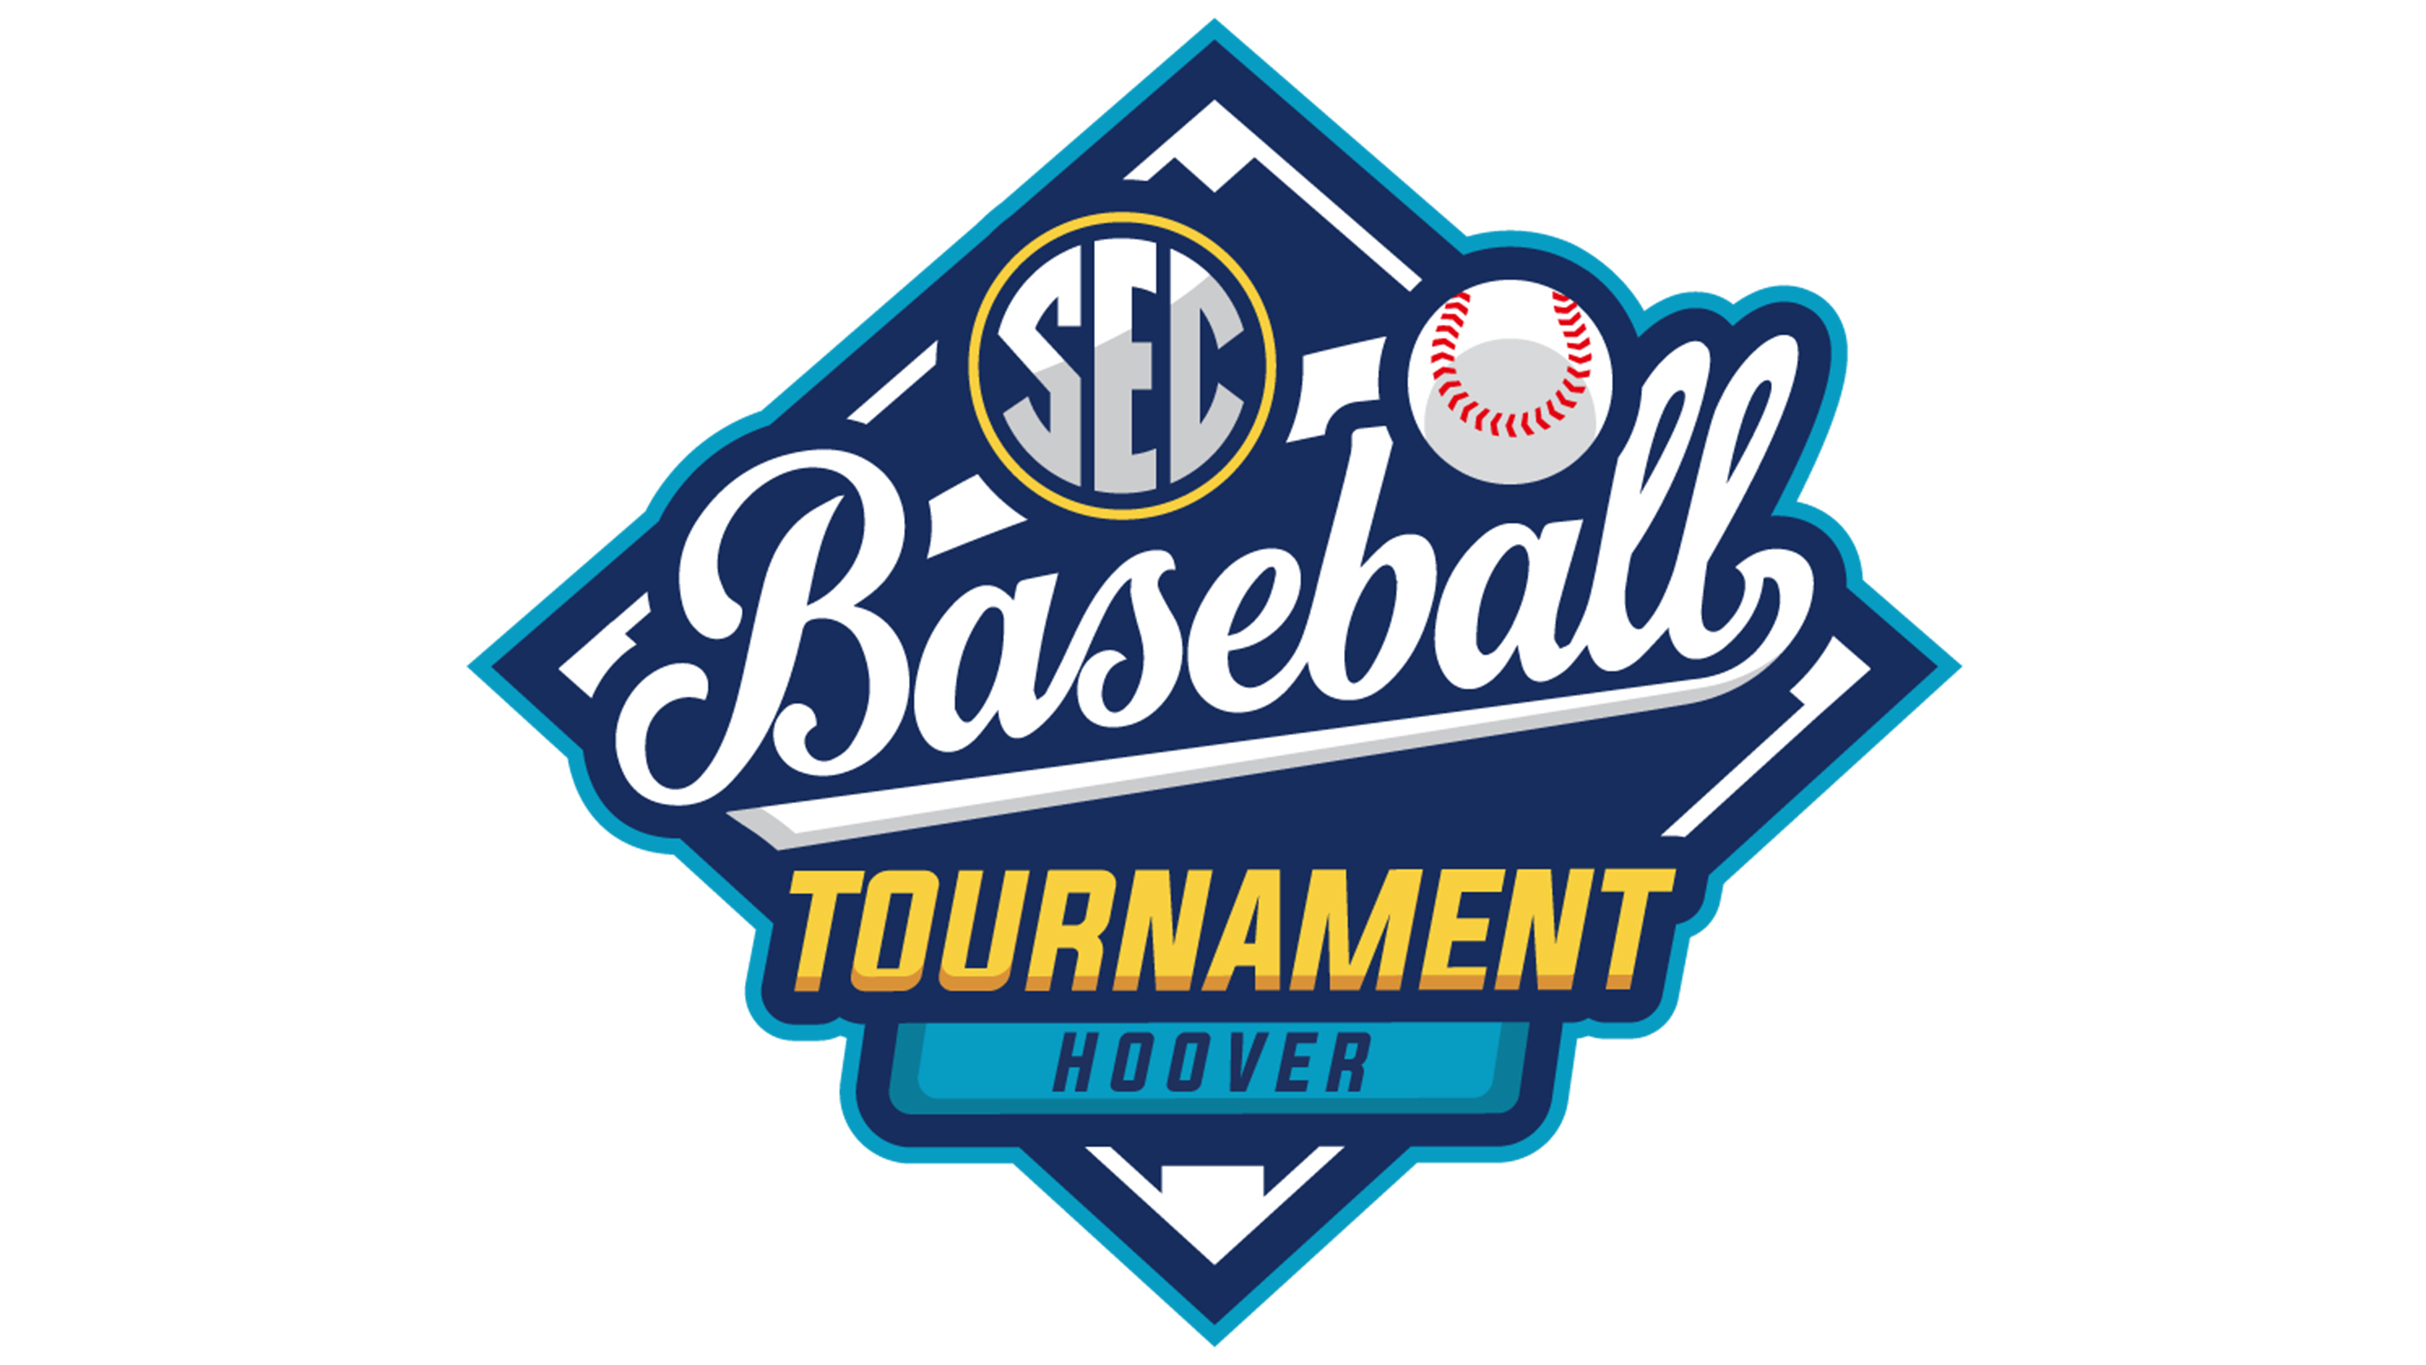 SEC Baseball Tournament-Championship Game